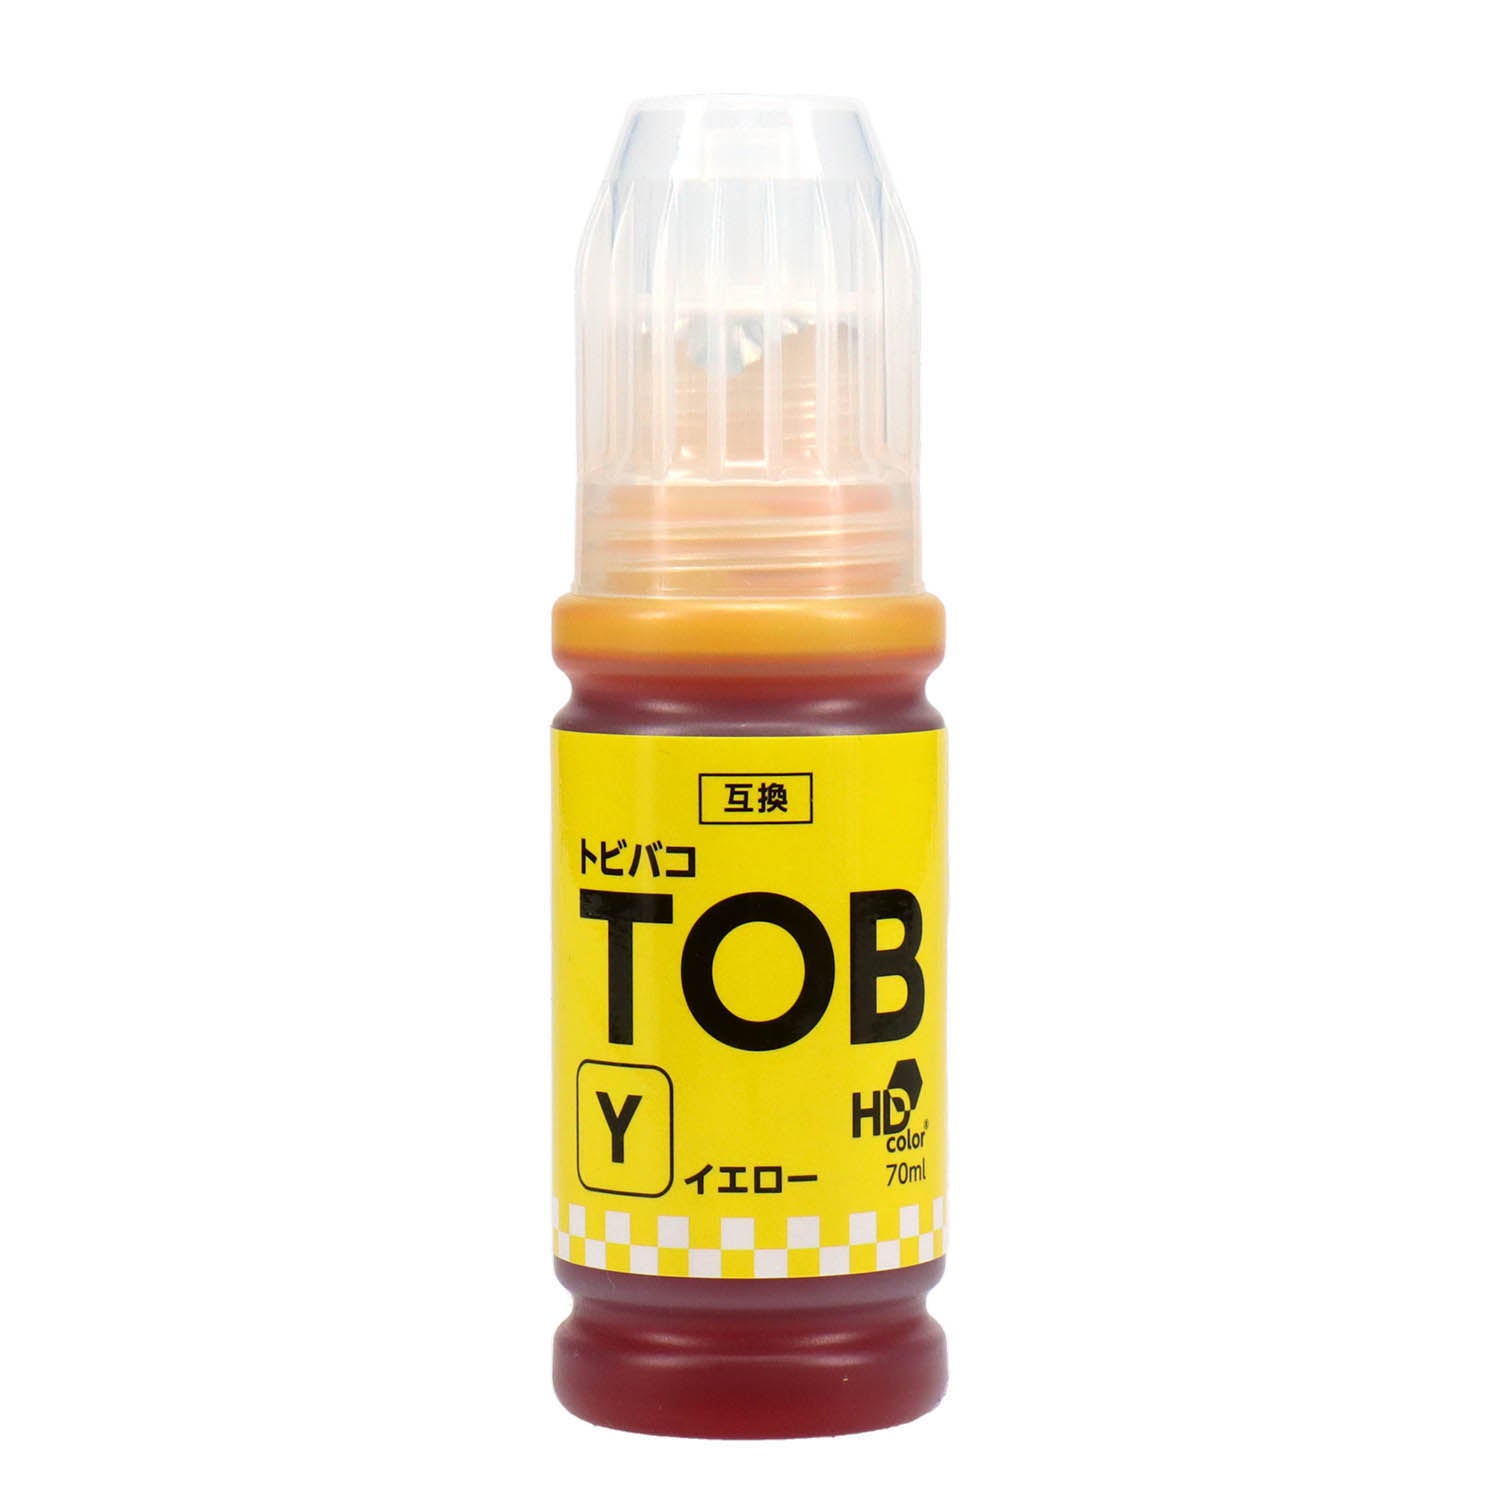 純正品エプソン インクボトル (トビバコ) TOB 5色セット (TOB-PB MB C M Y) - 4